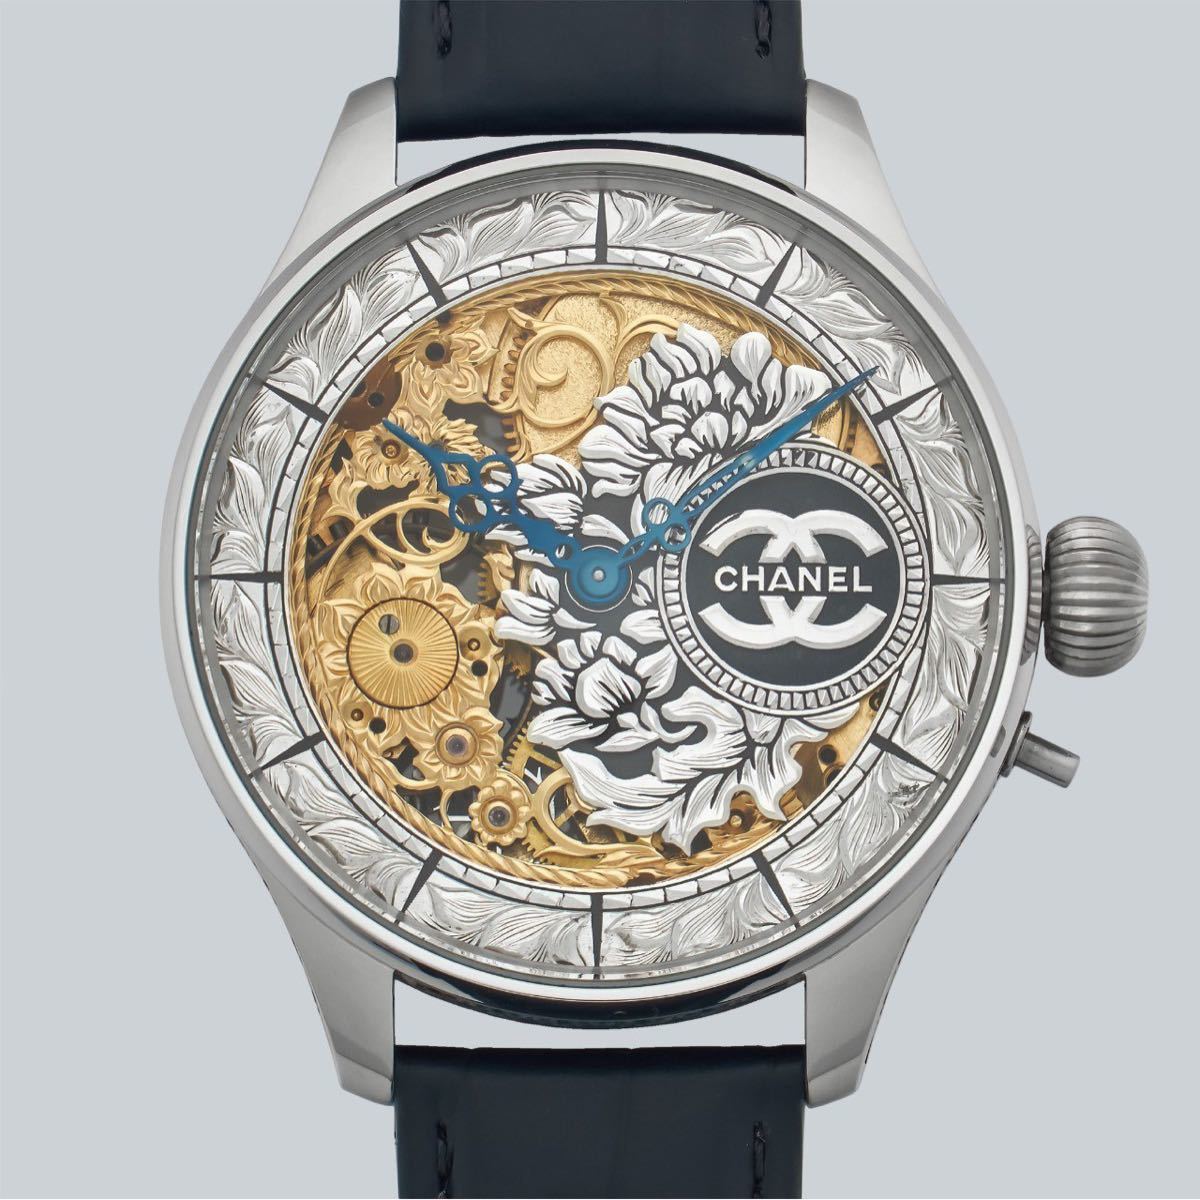 新作グッ watch Marriage アンティーク CHANEL スケルトン 手巻き 半年保証 懐中時計をアレンジした48mmのメンズ腕時計 その他